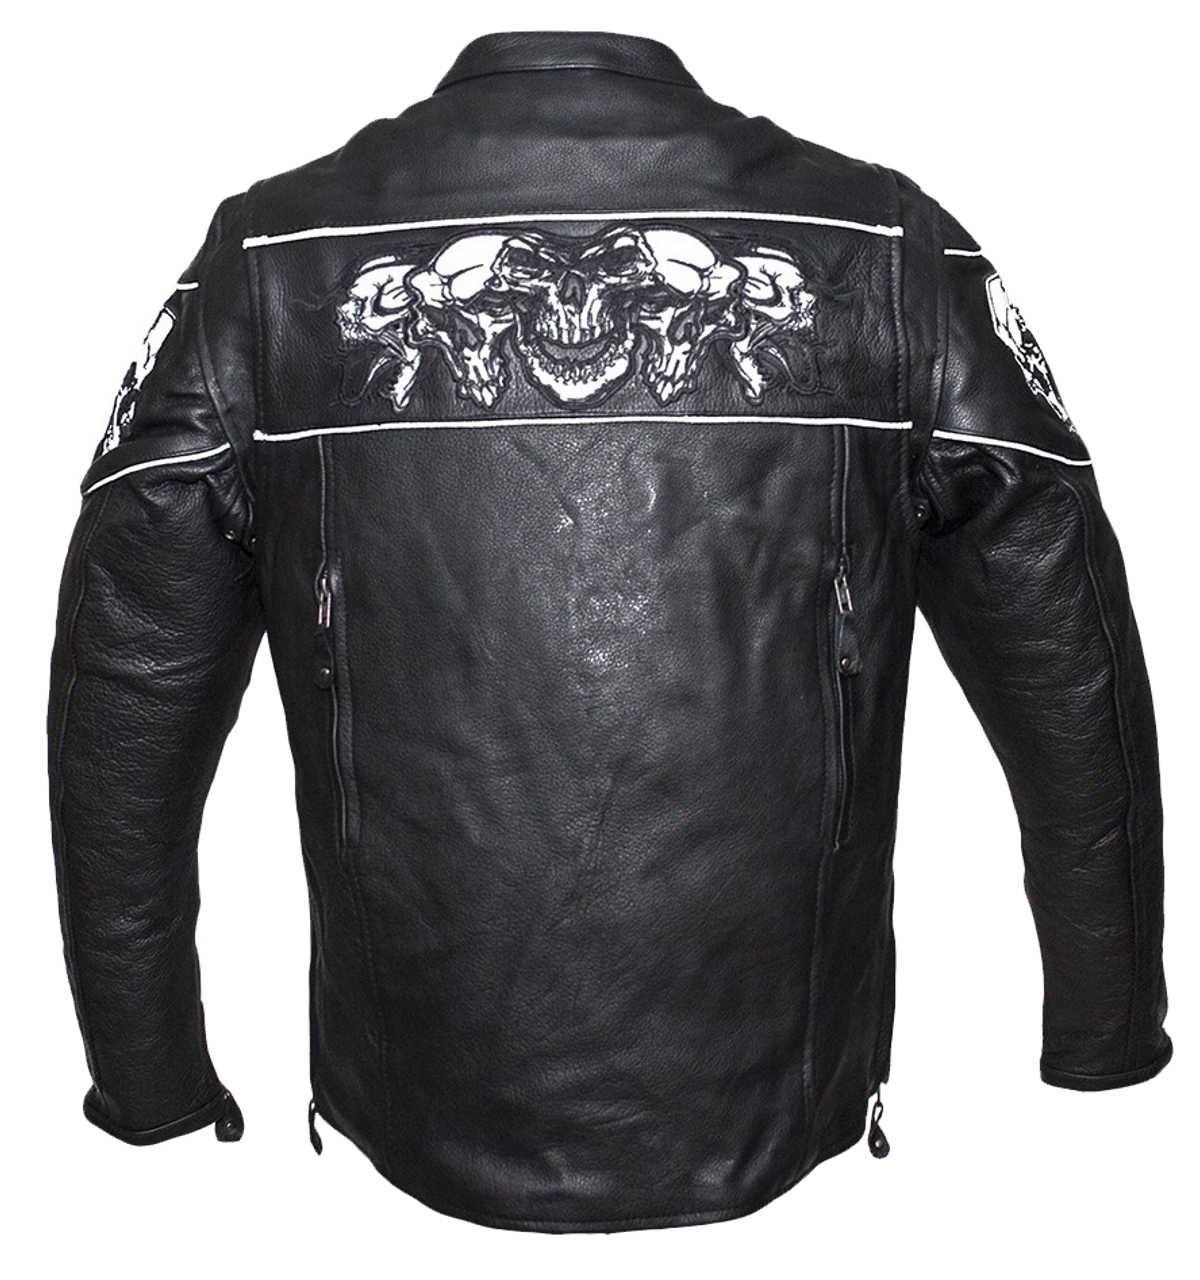 Racer Leather Jacket with Reflective Skulls and Concealed Carry Pocket -  SKU MJ825-11-DL